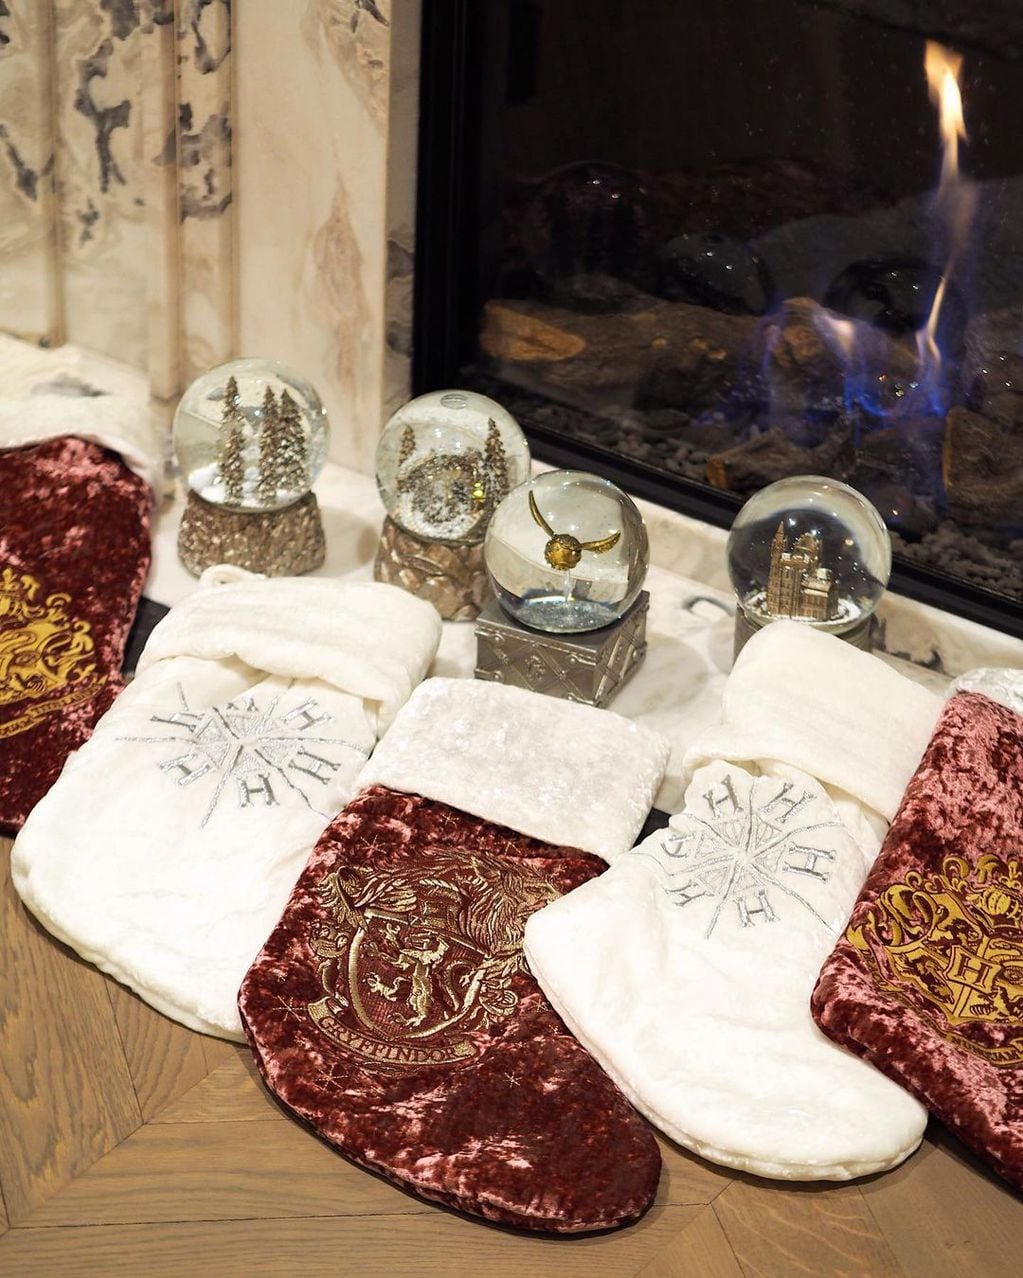 La rosarina mostró los accesorios alusivos a Harry Potter que eligió para la decoración de este año.